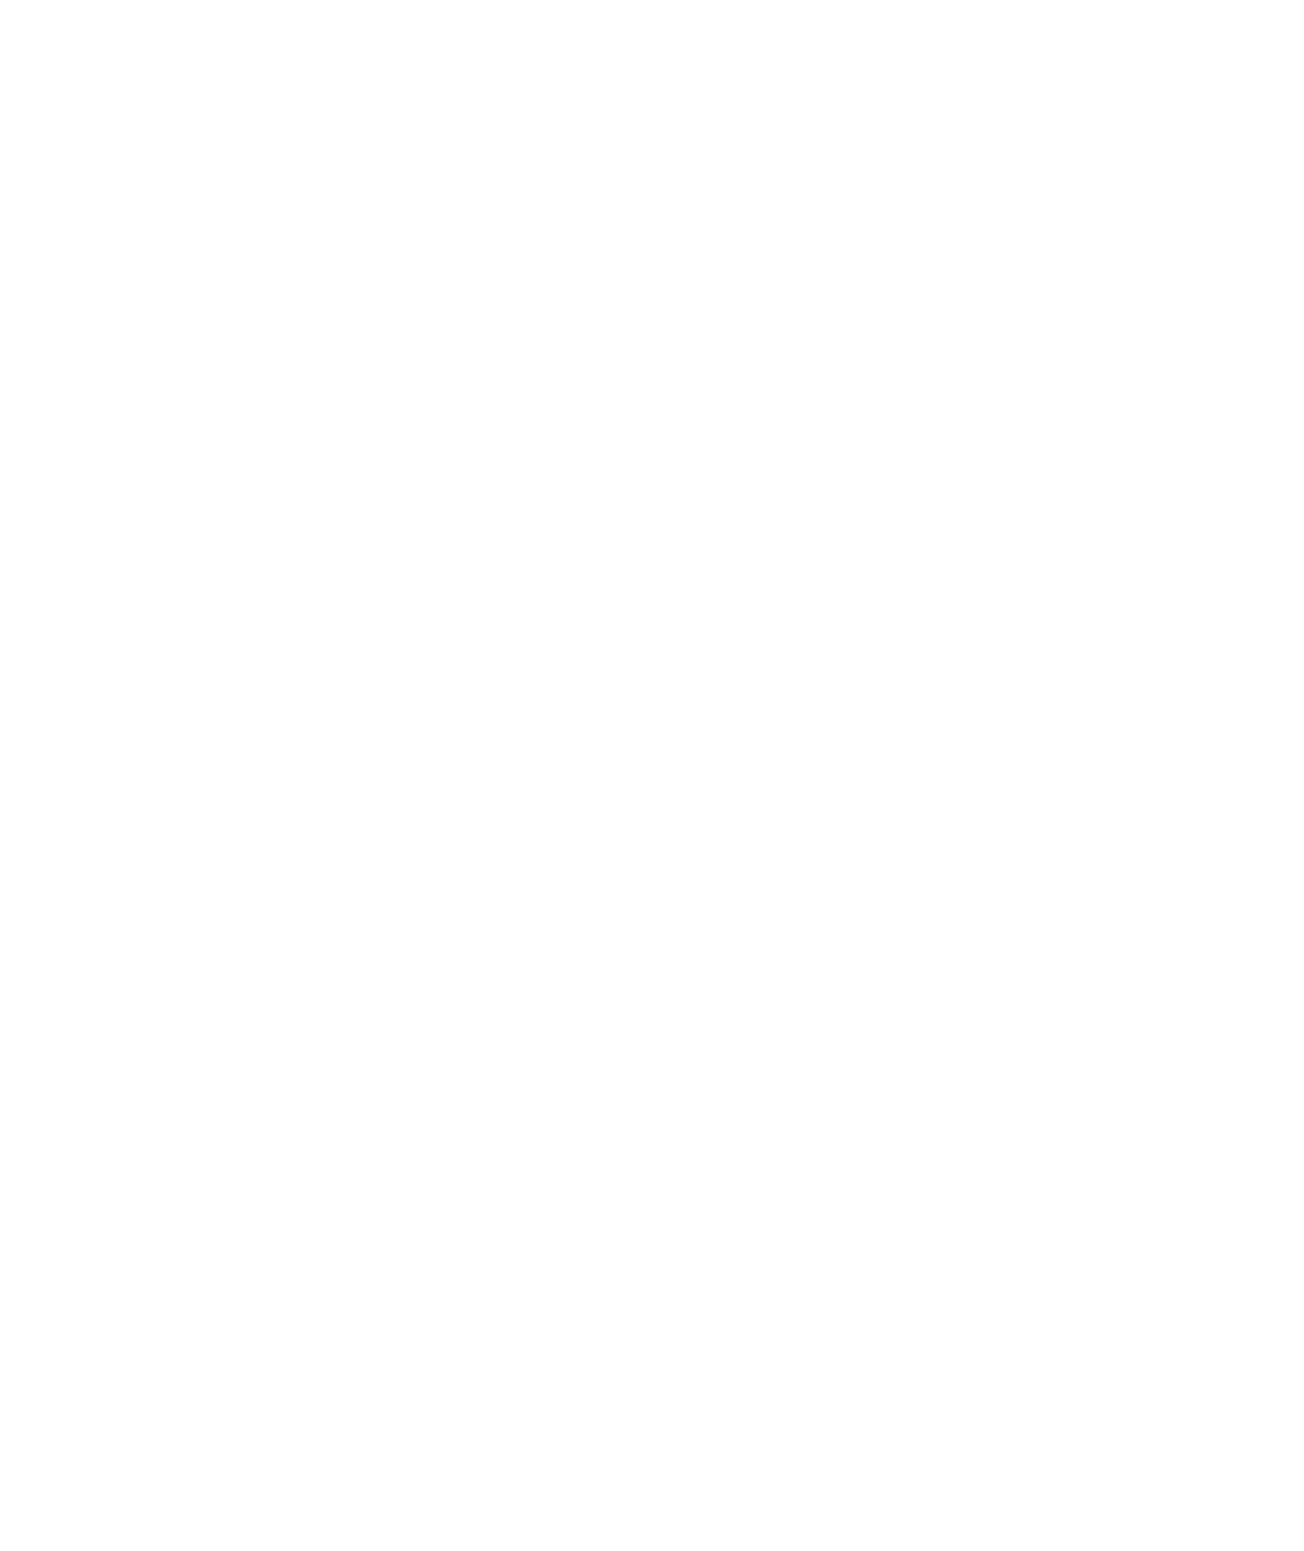 edenor logo for dark backgrounds (transparent PNG)